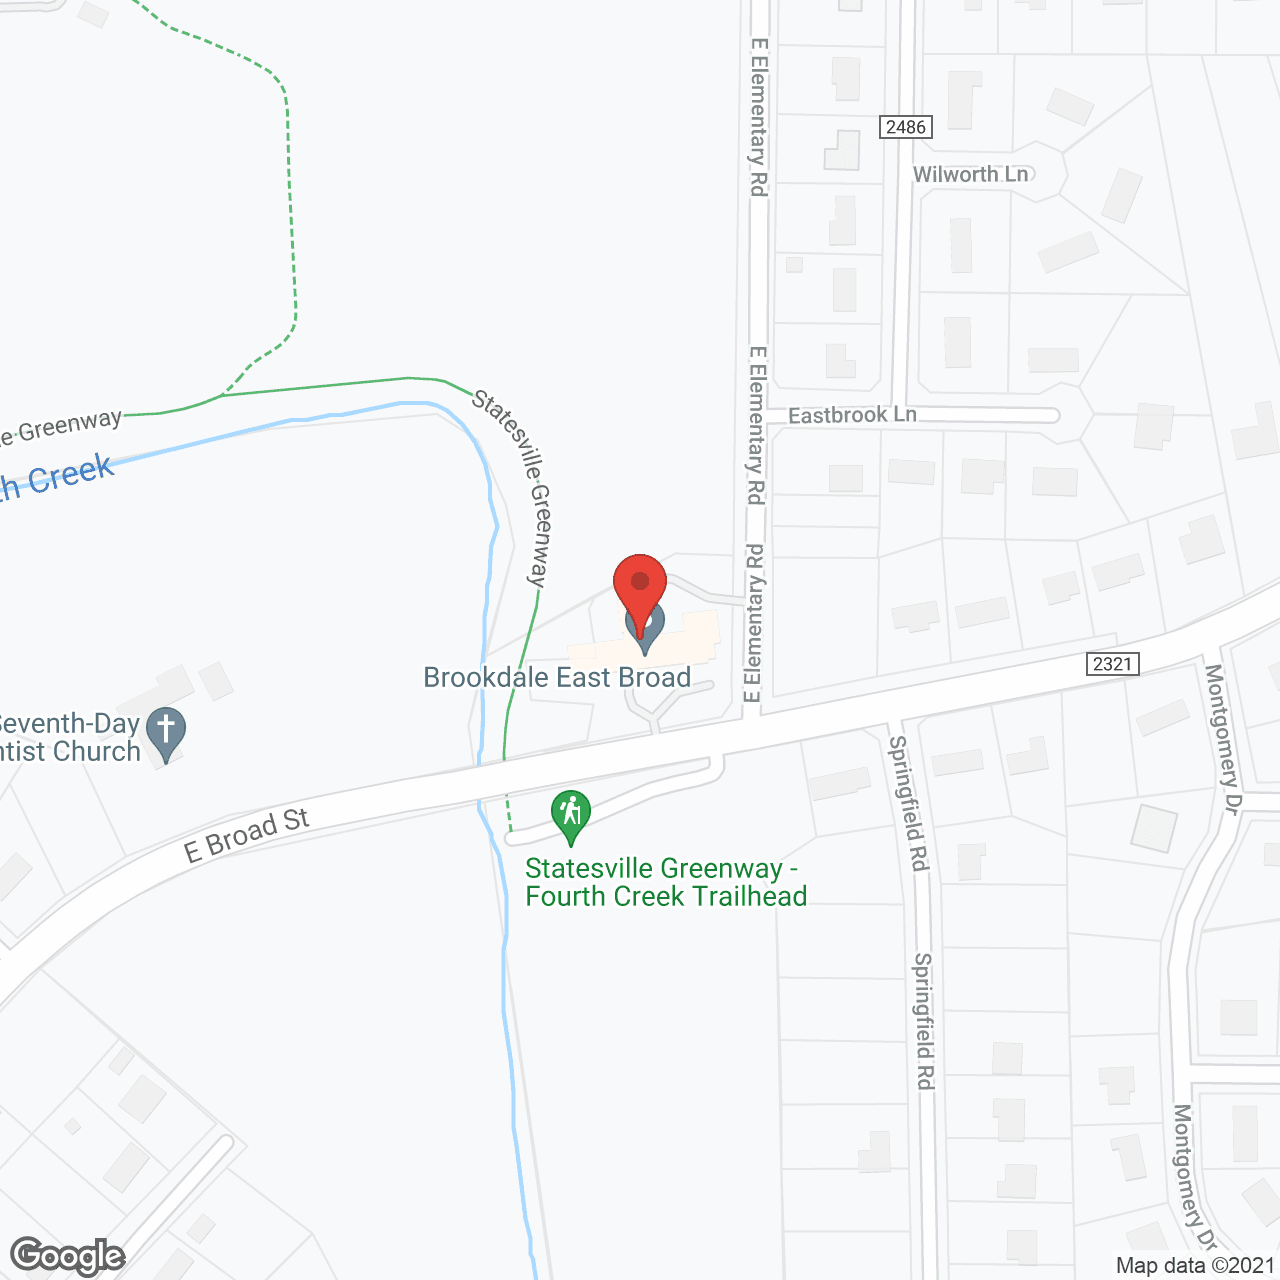 Brookdale East Broad in google map